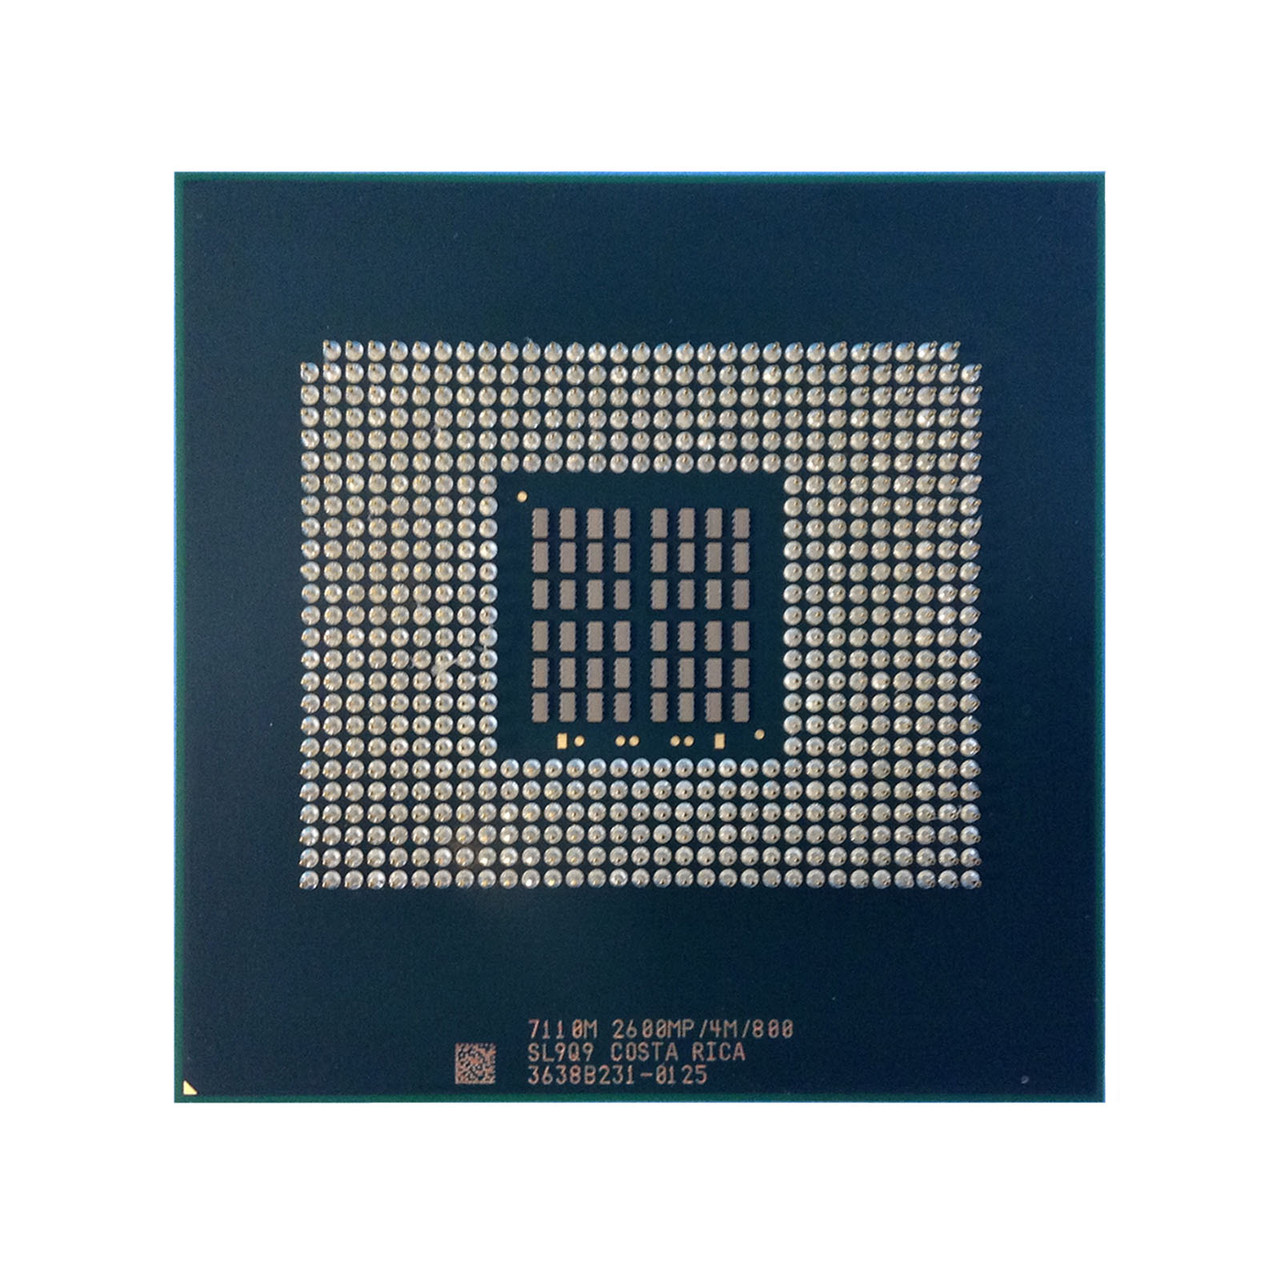 Intel SL9Q9 Xeon 7110M DC 2.6Ghz 4MB 800FSB Processor